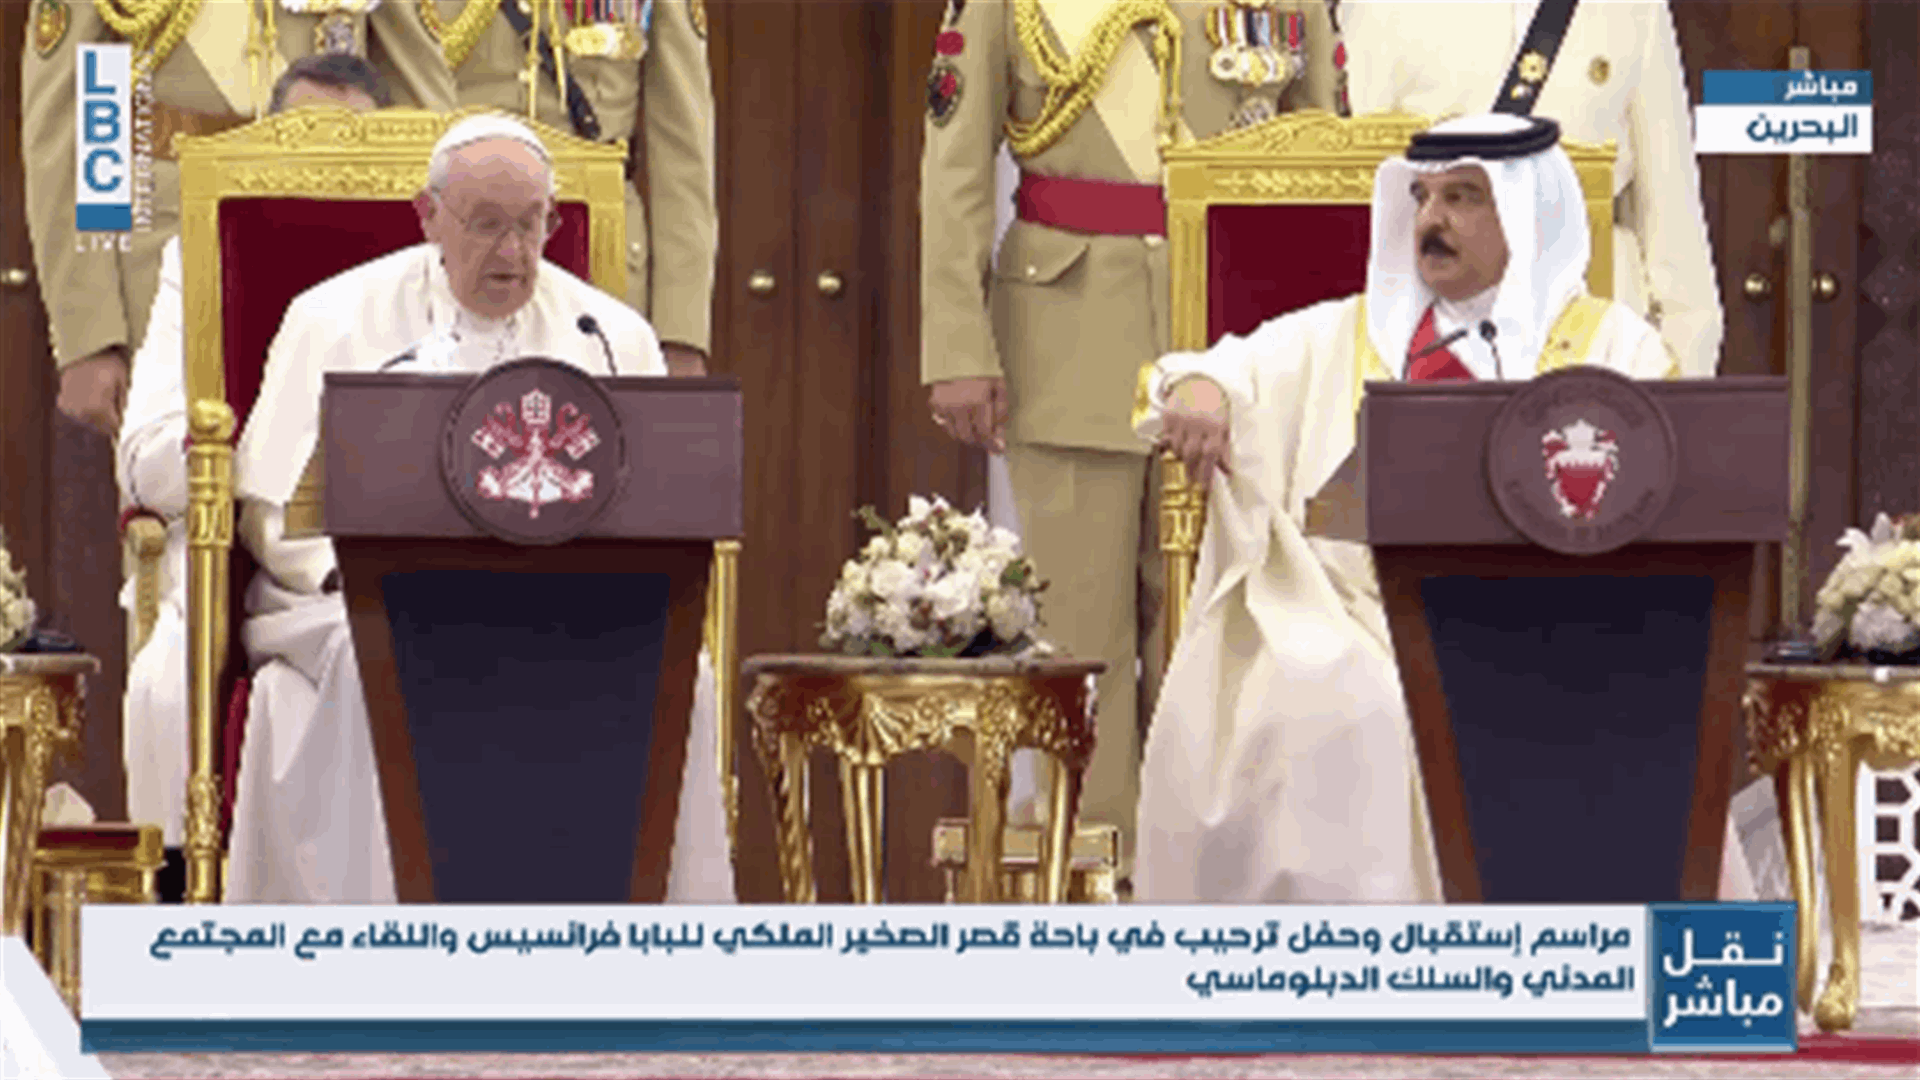 البابا فرنسيس يلتقي ملك البحرين: لا يجب أن ندع إمكانية الحوار والتلاقي بين الثاقافات والاديان تتبخّر